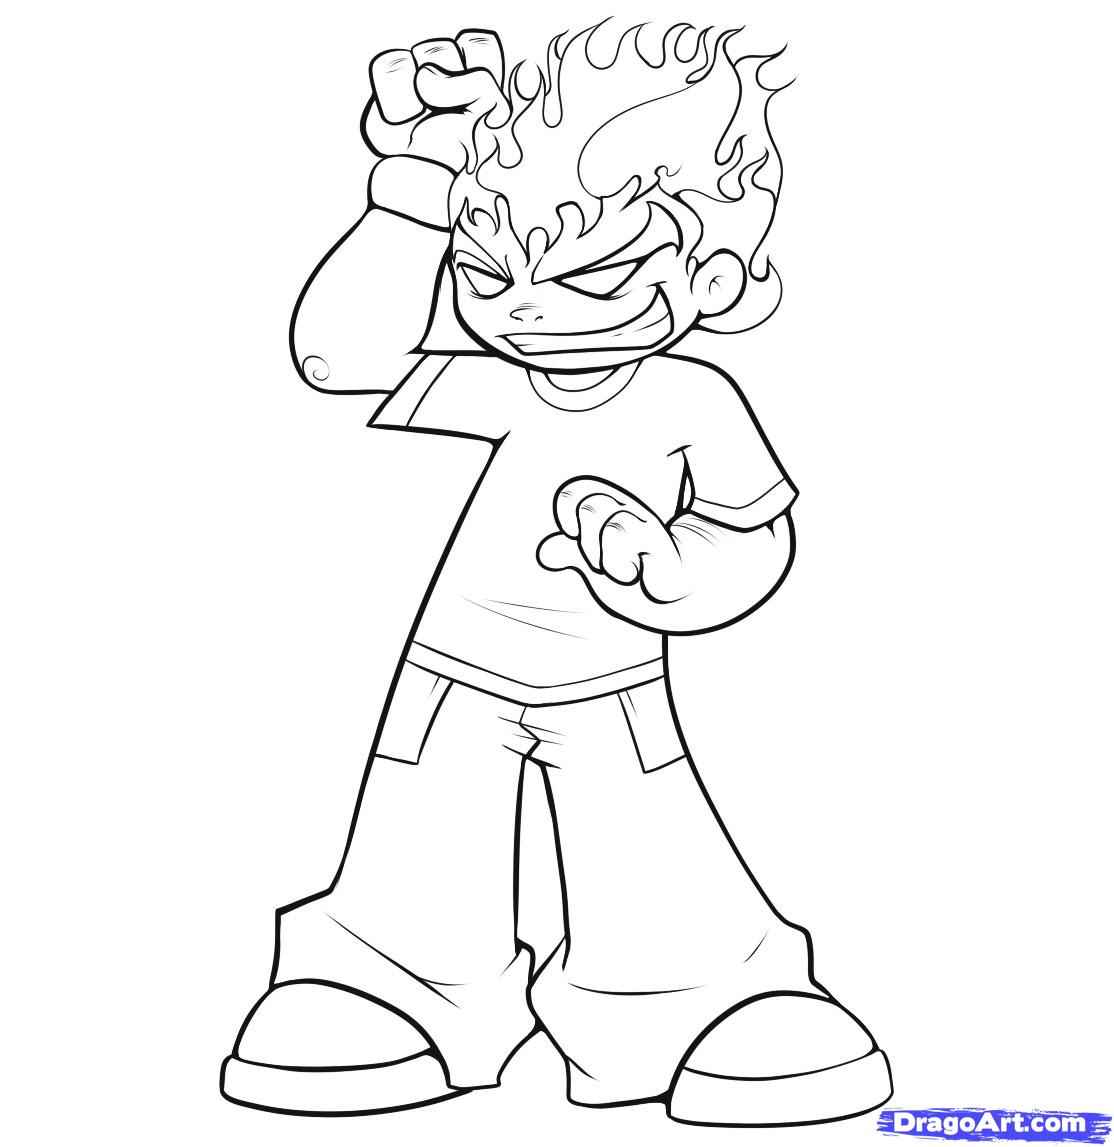 Cartoon Character Drawing at GetDrawings | Free download